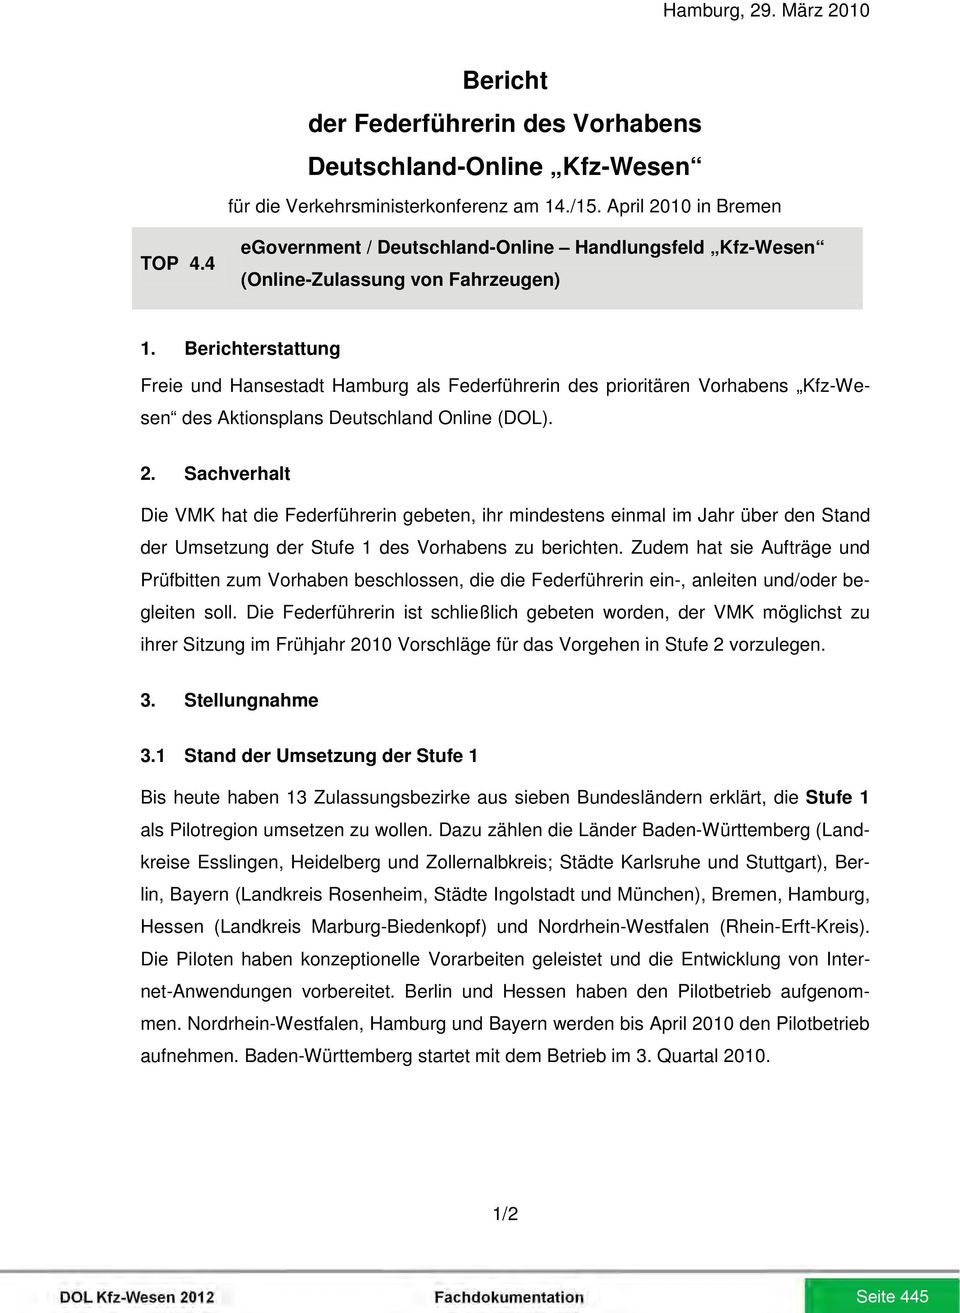 Berichterstattung Freie und Hansestadt Hamburg als Federführerin des prioritären Vorhabens Kfz-Wesen des Aktionsplans Deutschland Online (DOL). 2.